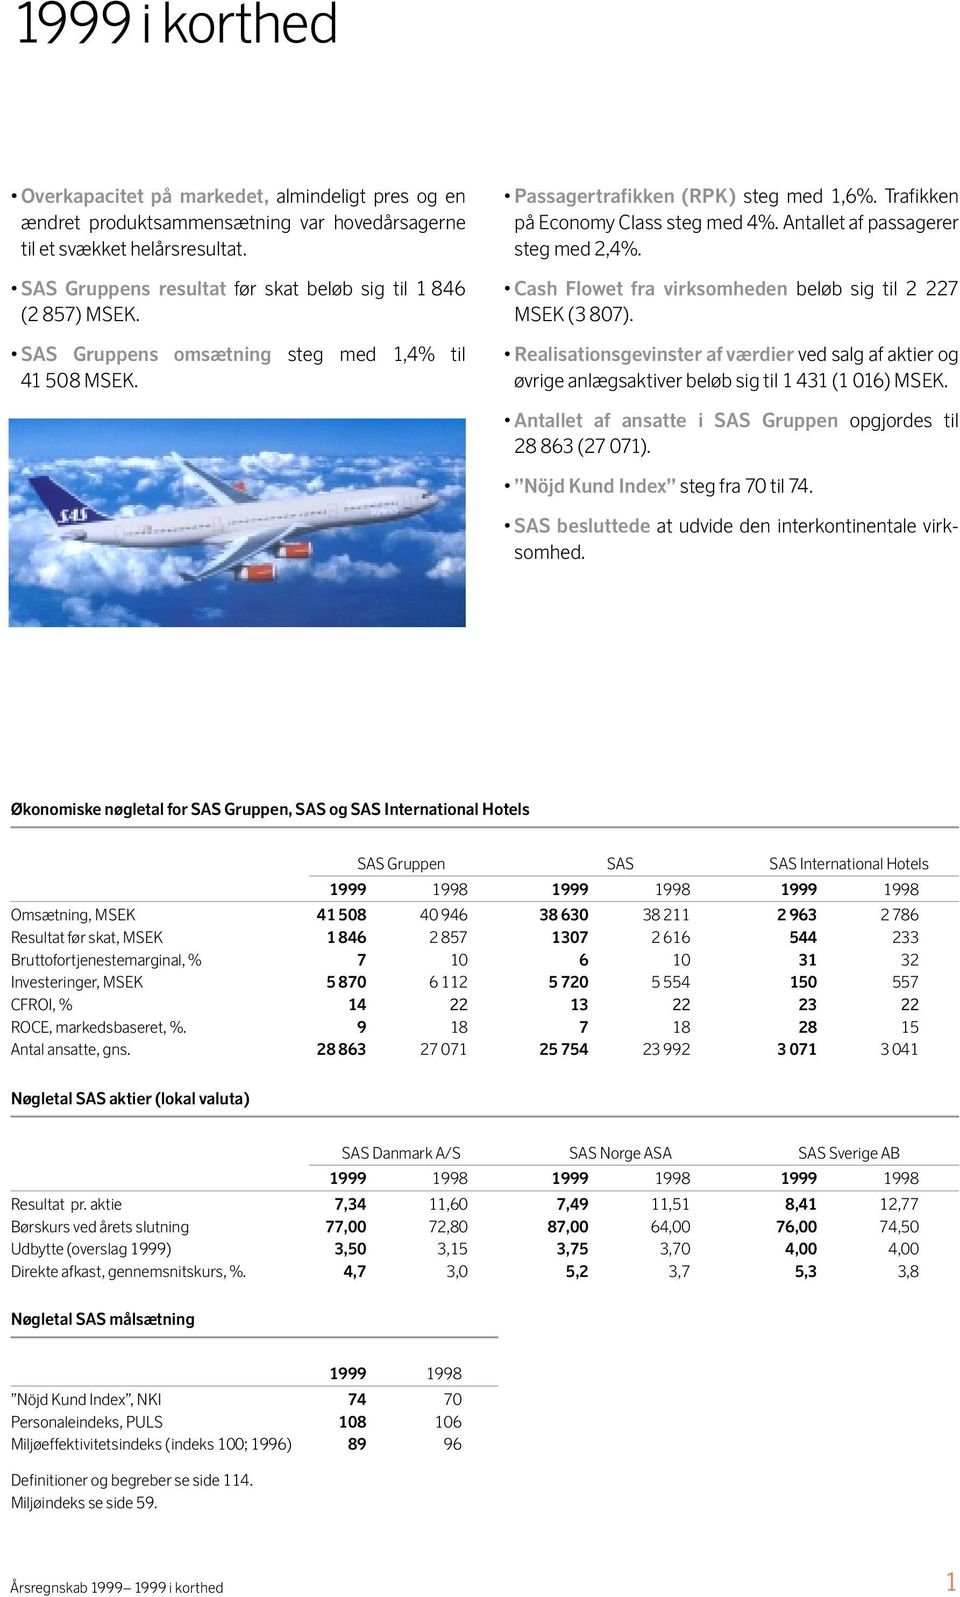 Cash Flowet fra virksomheden beløb sig til 2 227 MSEK (3 807). SAS Gruppens omsætning 41 508 MSEK.